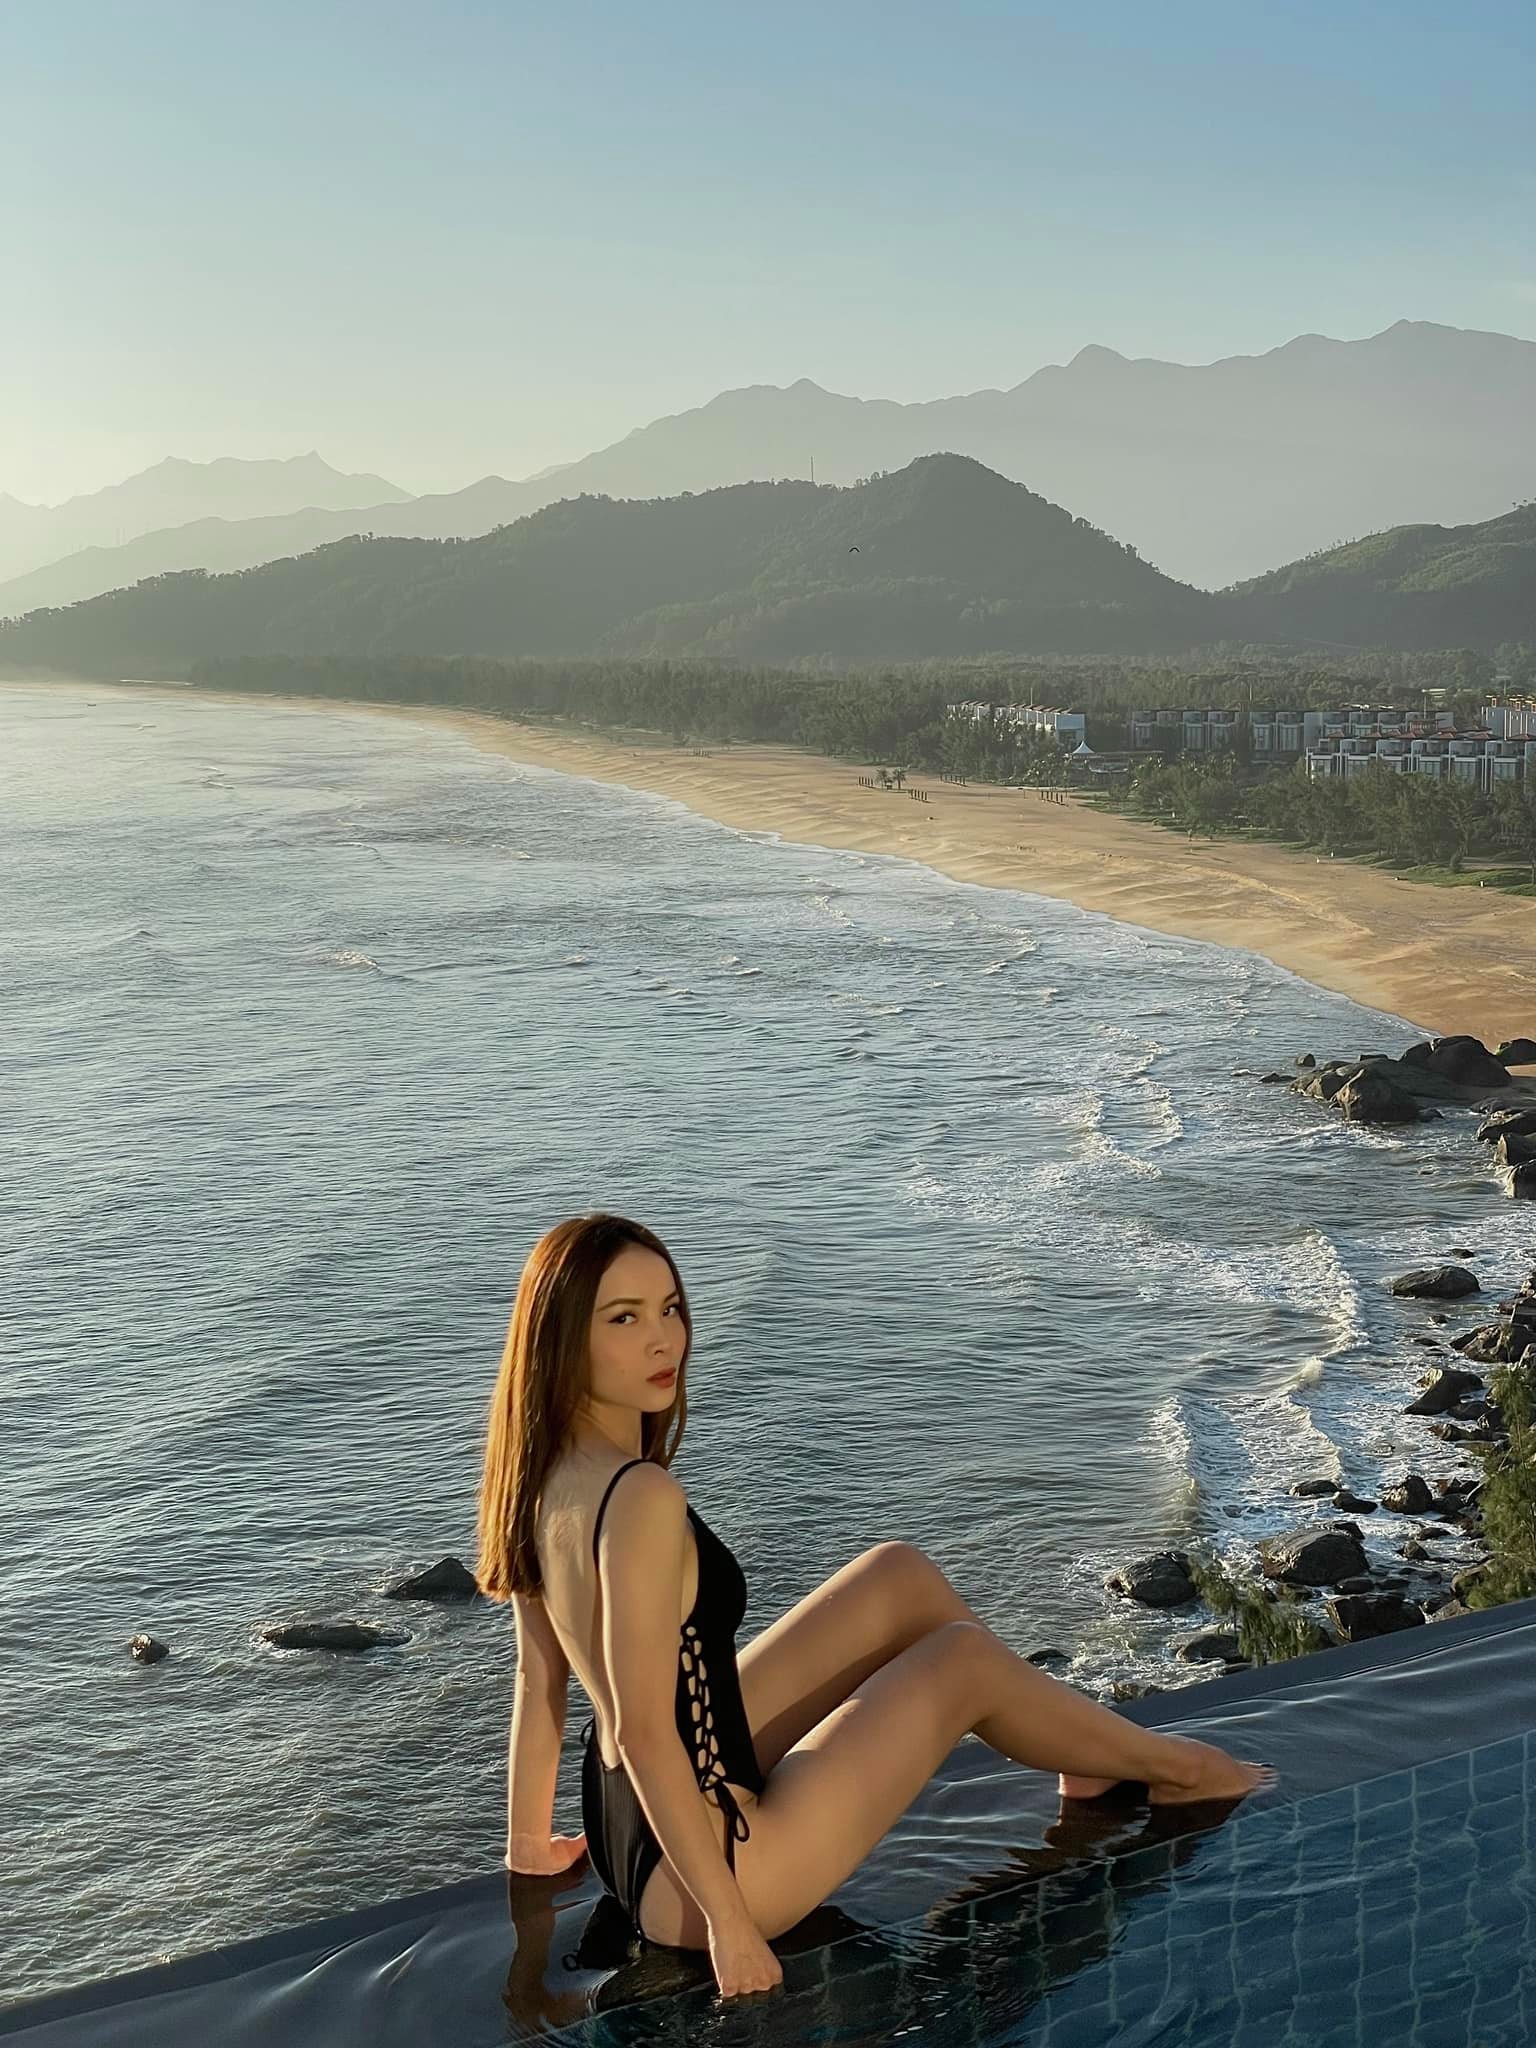 Yến Trang khoe ảnh bikini nóng bỏng trong chuyến du lịch ở Huế. Nữ ca sĩ hiện tại không còn tham gia quá nhiều hoạt động nghệ thuật mà dành thời gian kinh doanh, tập trung cho cuộc sống riêng.